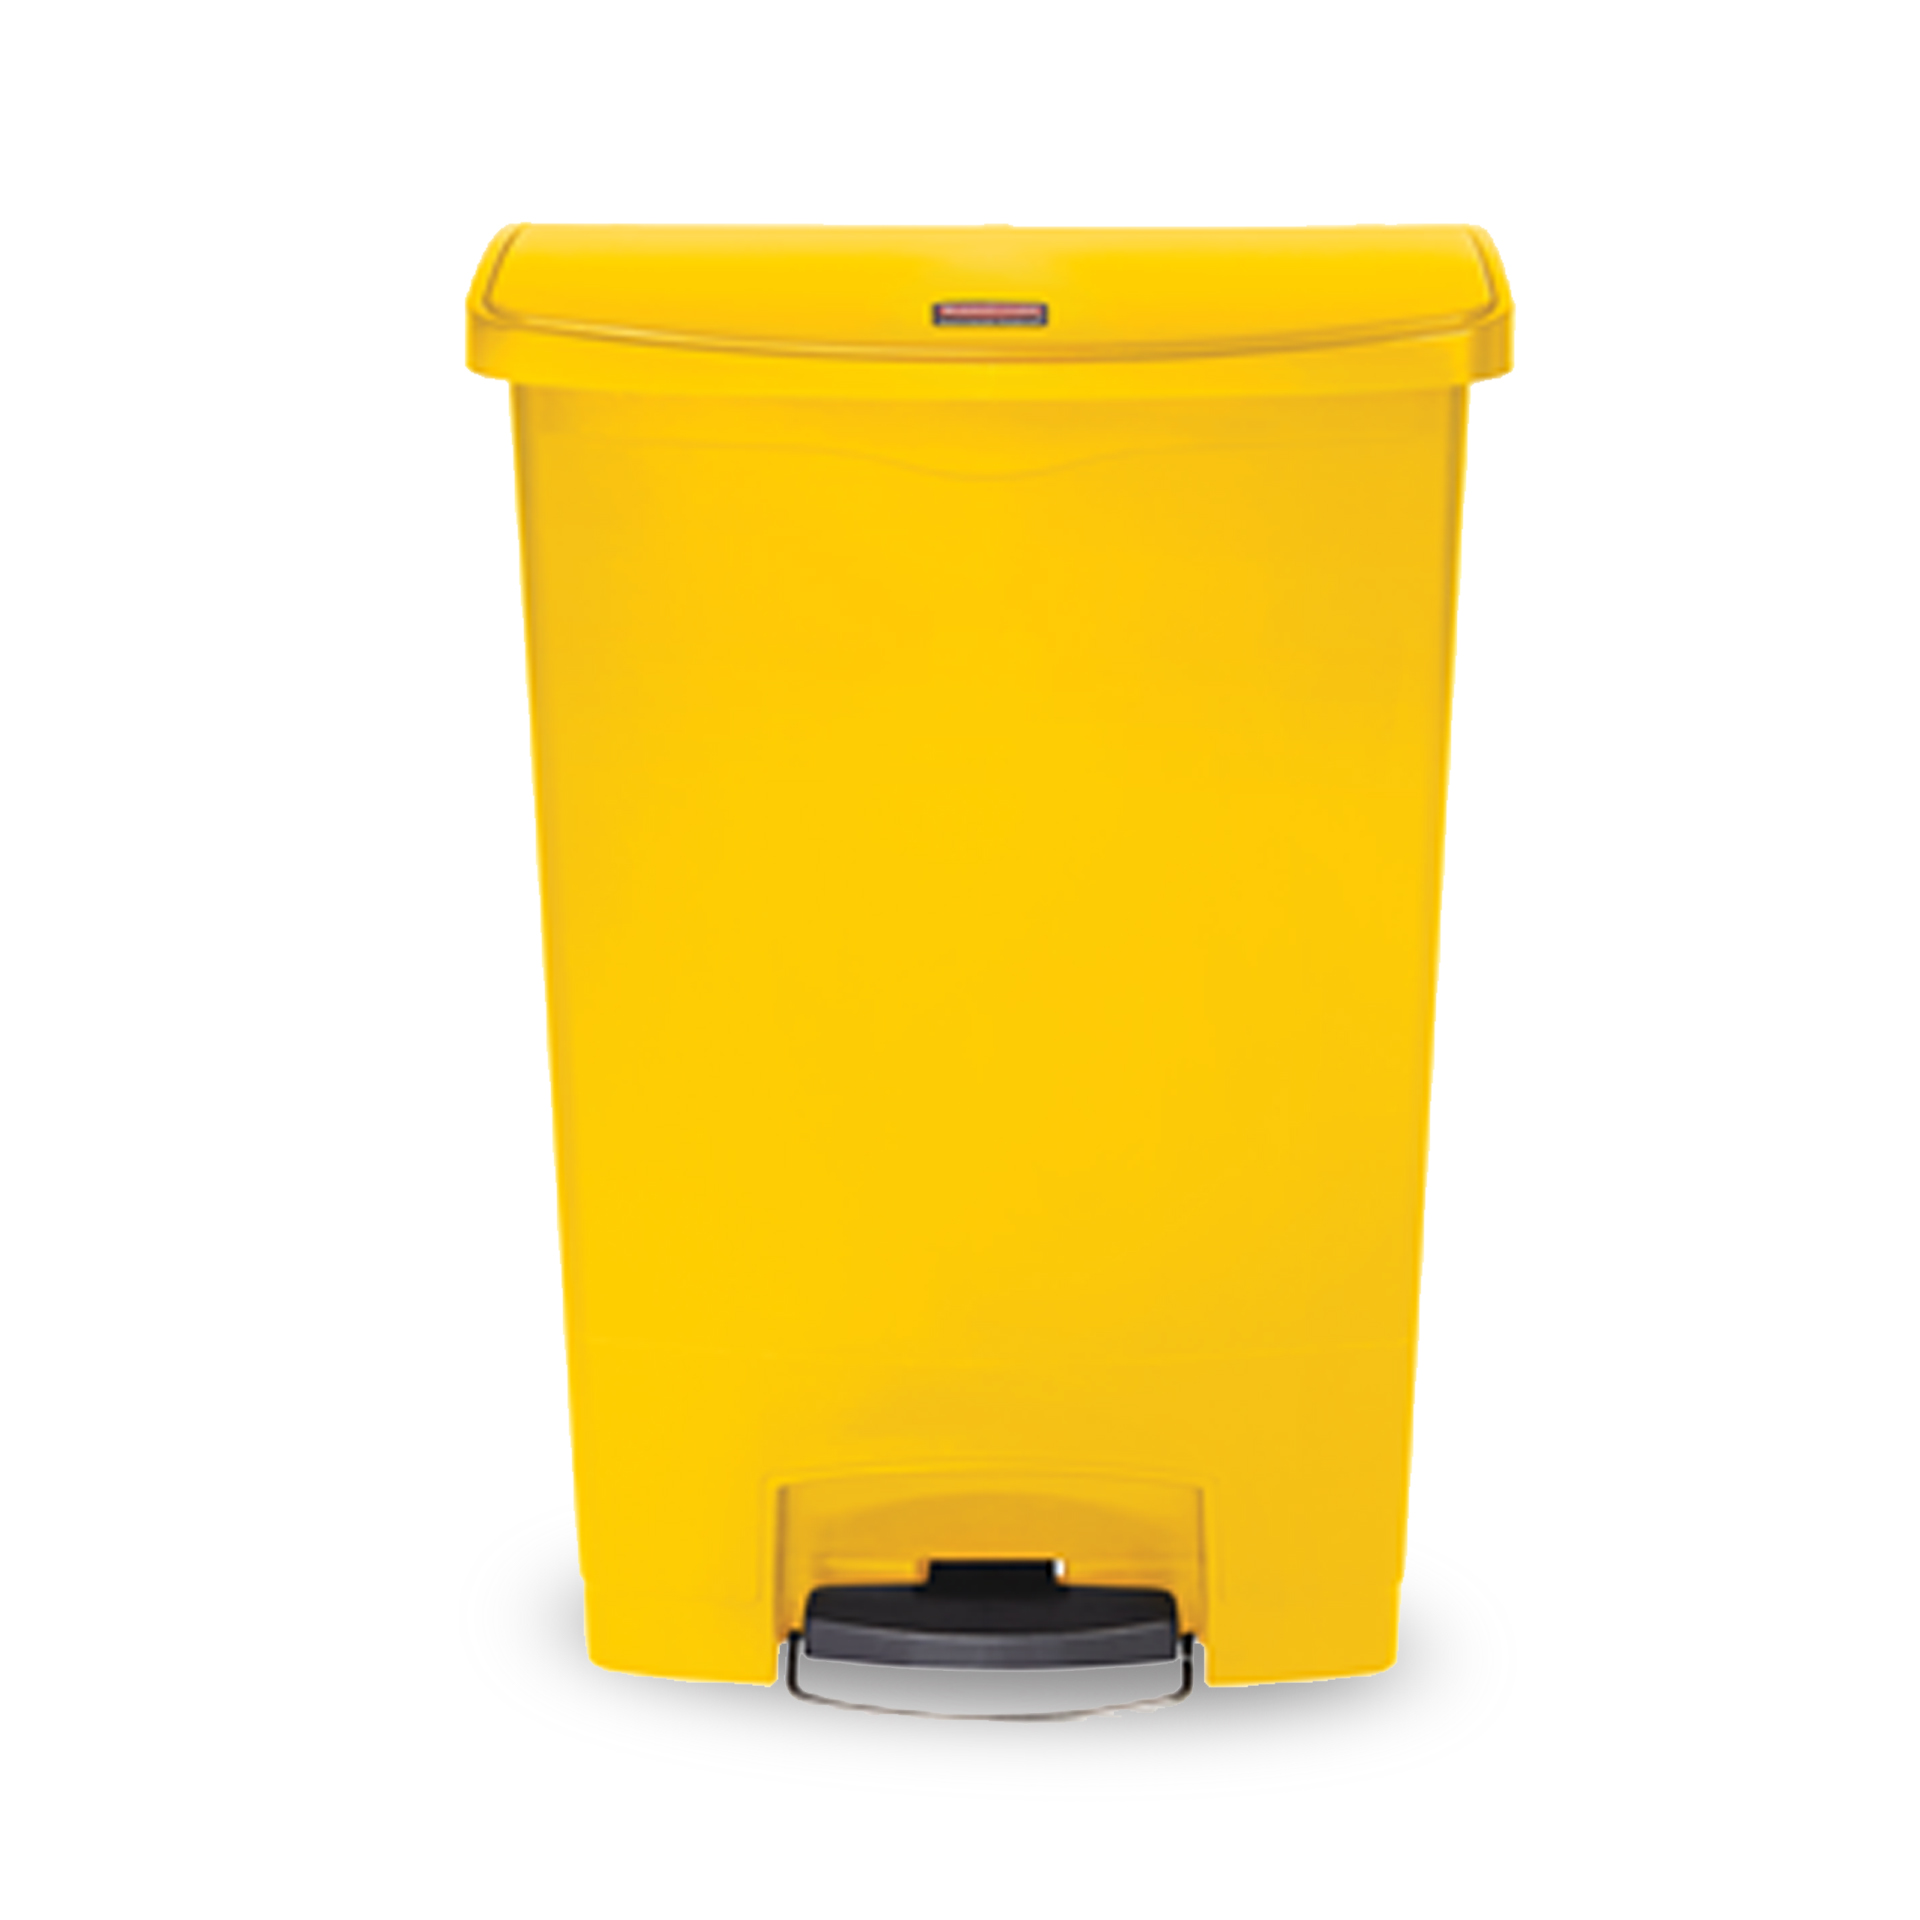 ถังขยะแบบเท้าเหยียบ Slim Jim® Step-On Container ขนาด 90 ลิตร สีเหลือง